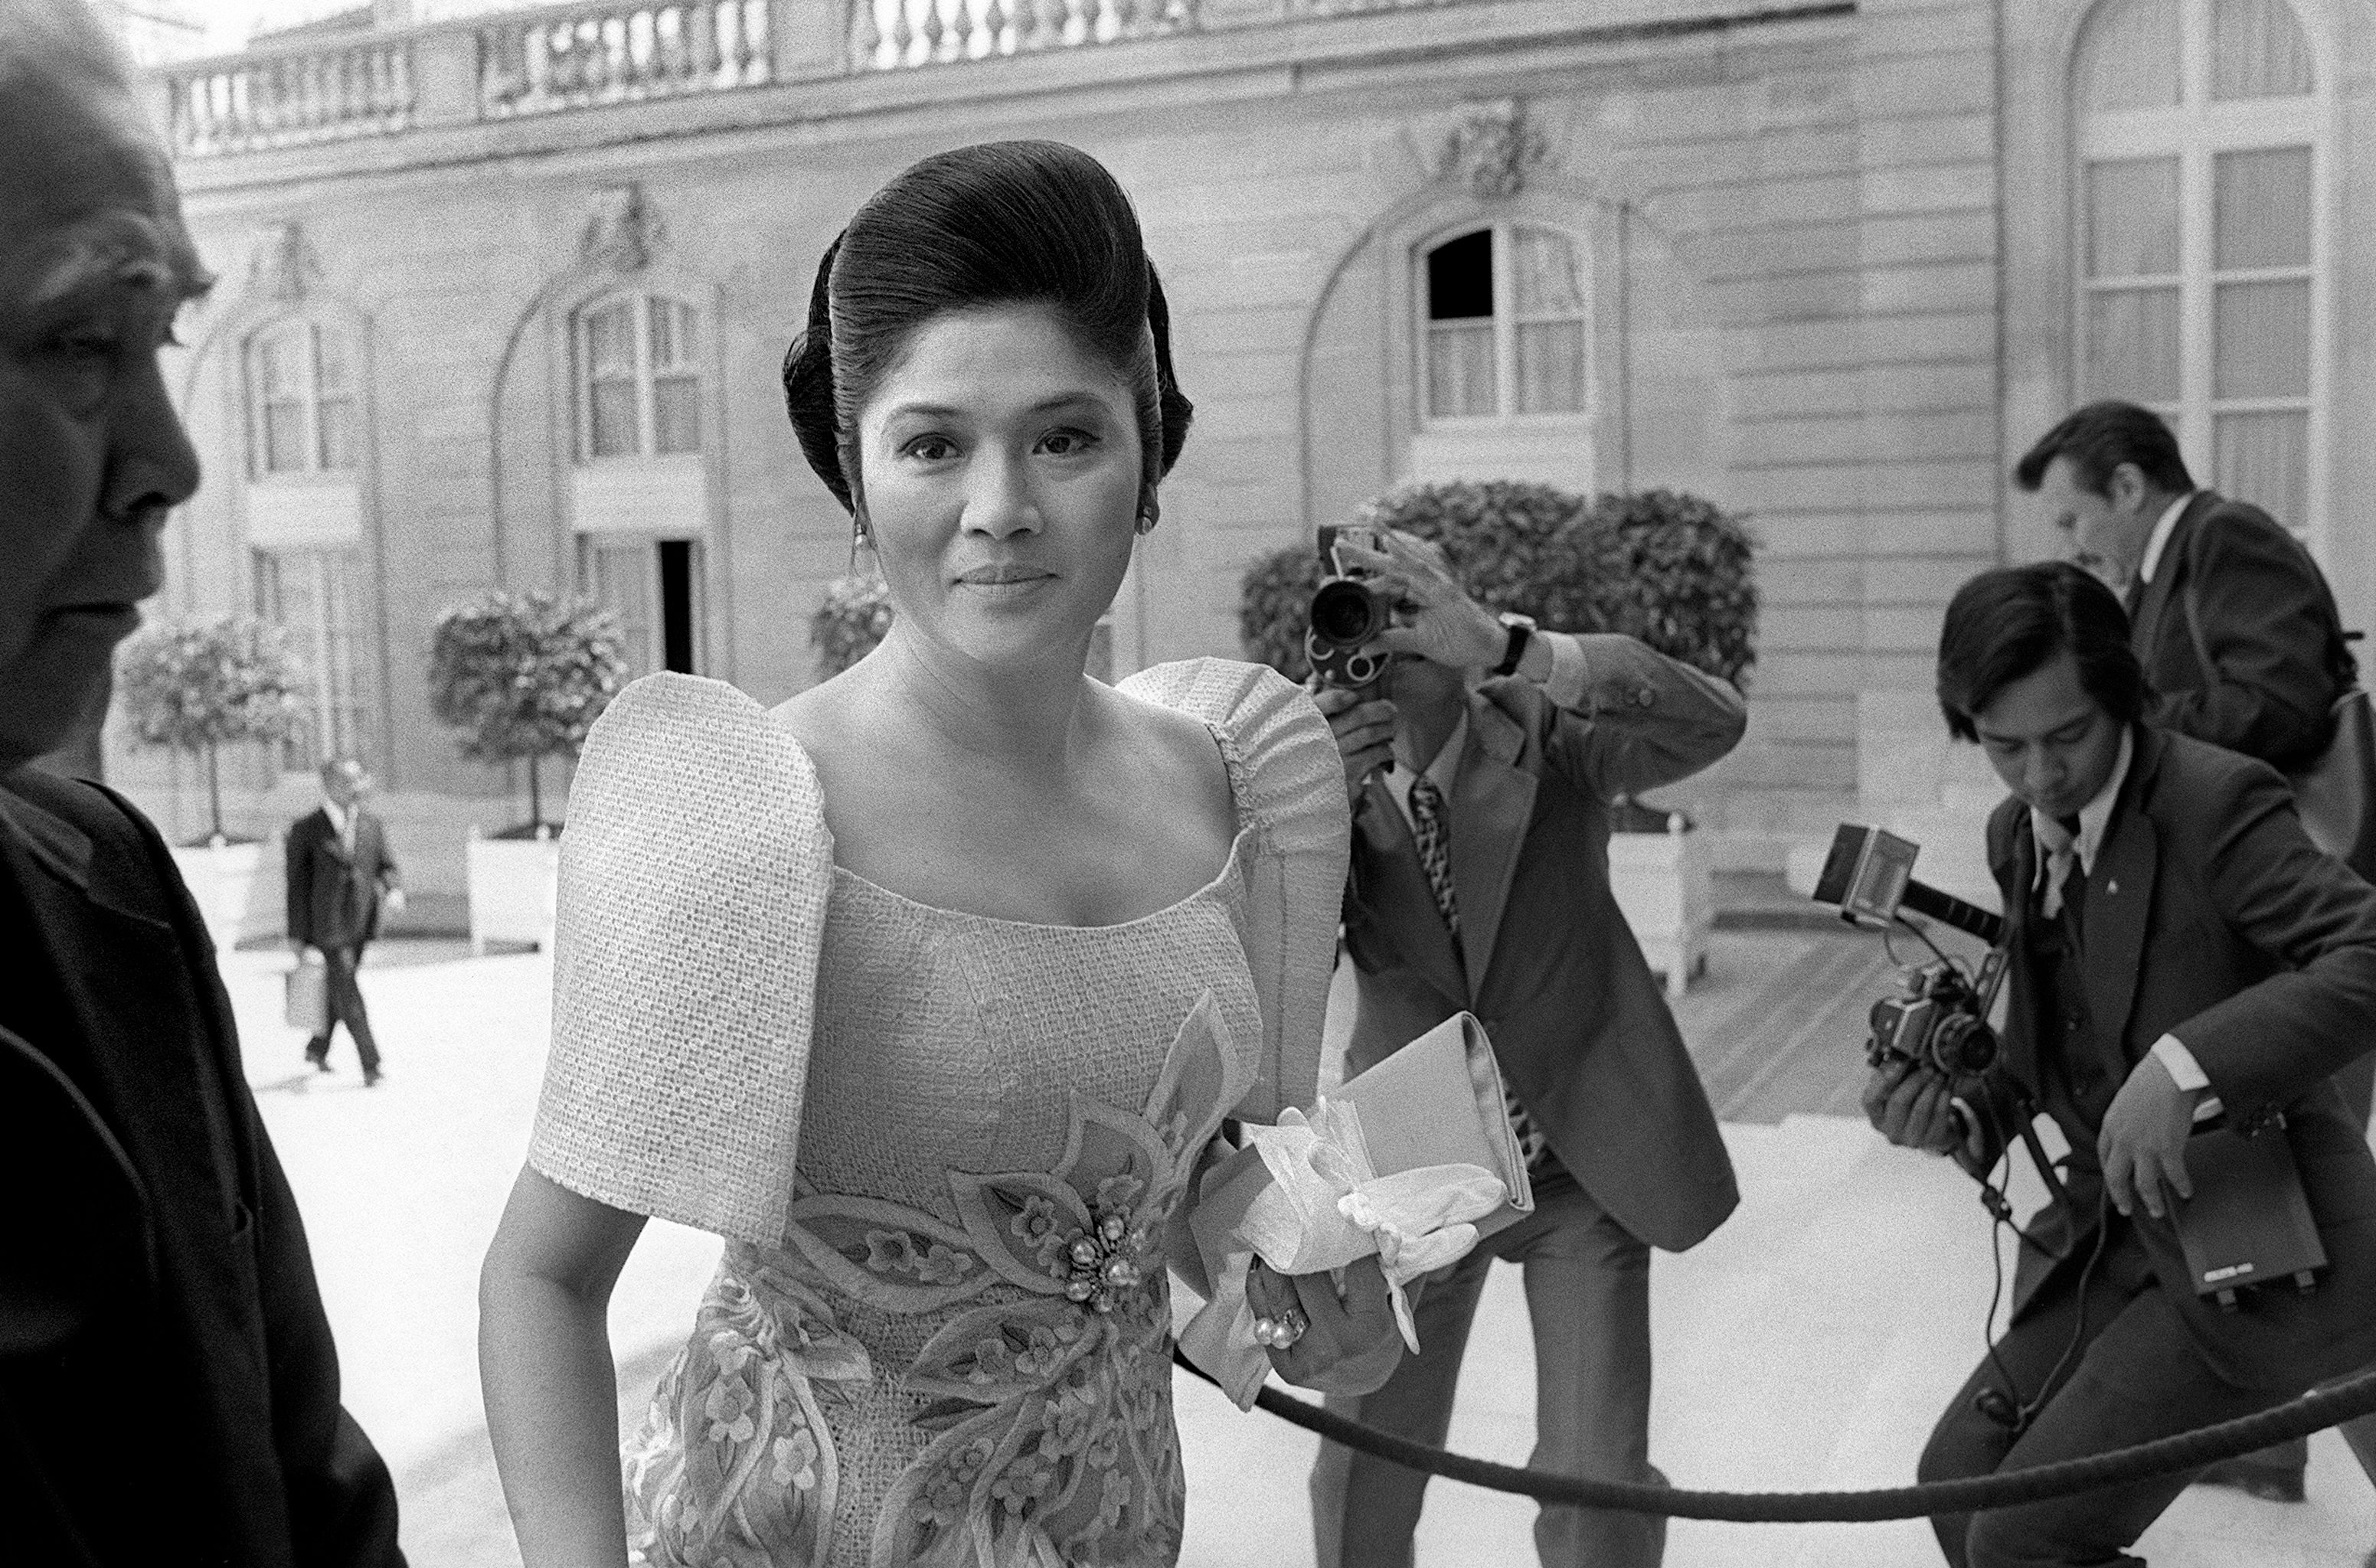 นางอีมัลดา มาร์กอส อดีตสุภาพสตรีหมายเลขหนึ่งของฟิลิปปินส์ ขณะเดินทางถึงทำเนียบประธานาธิบดีฝรั่งเศส (The Élysée Palace) ในกรุงปารีส เมื่อวันที่ 26 พฤษภาคม 1976 